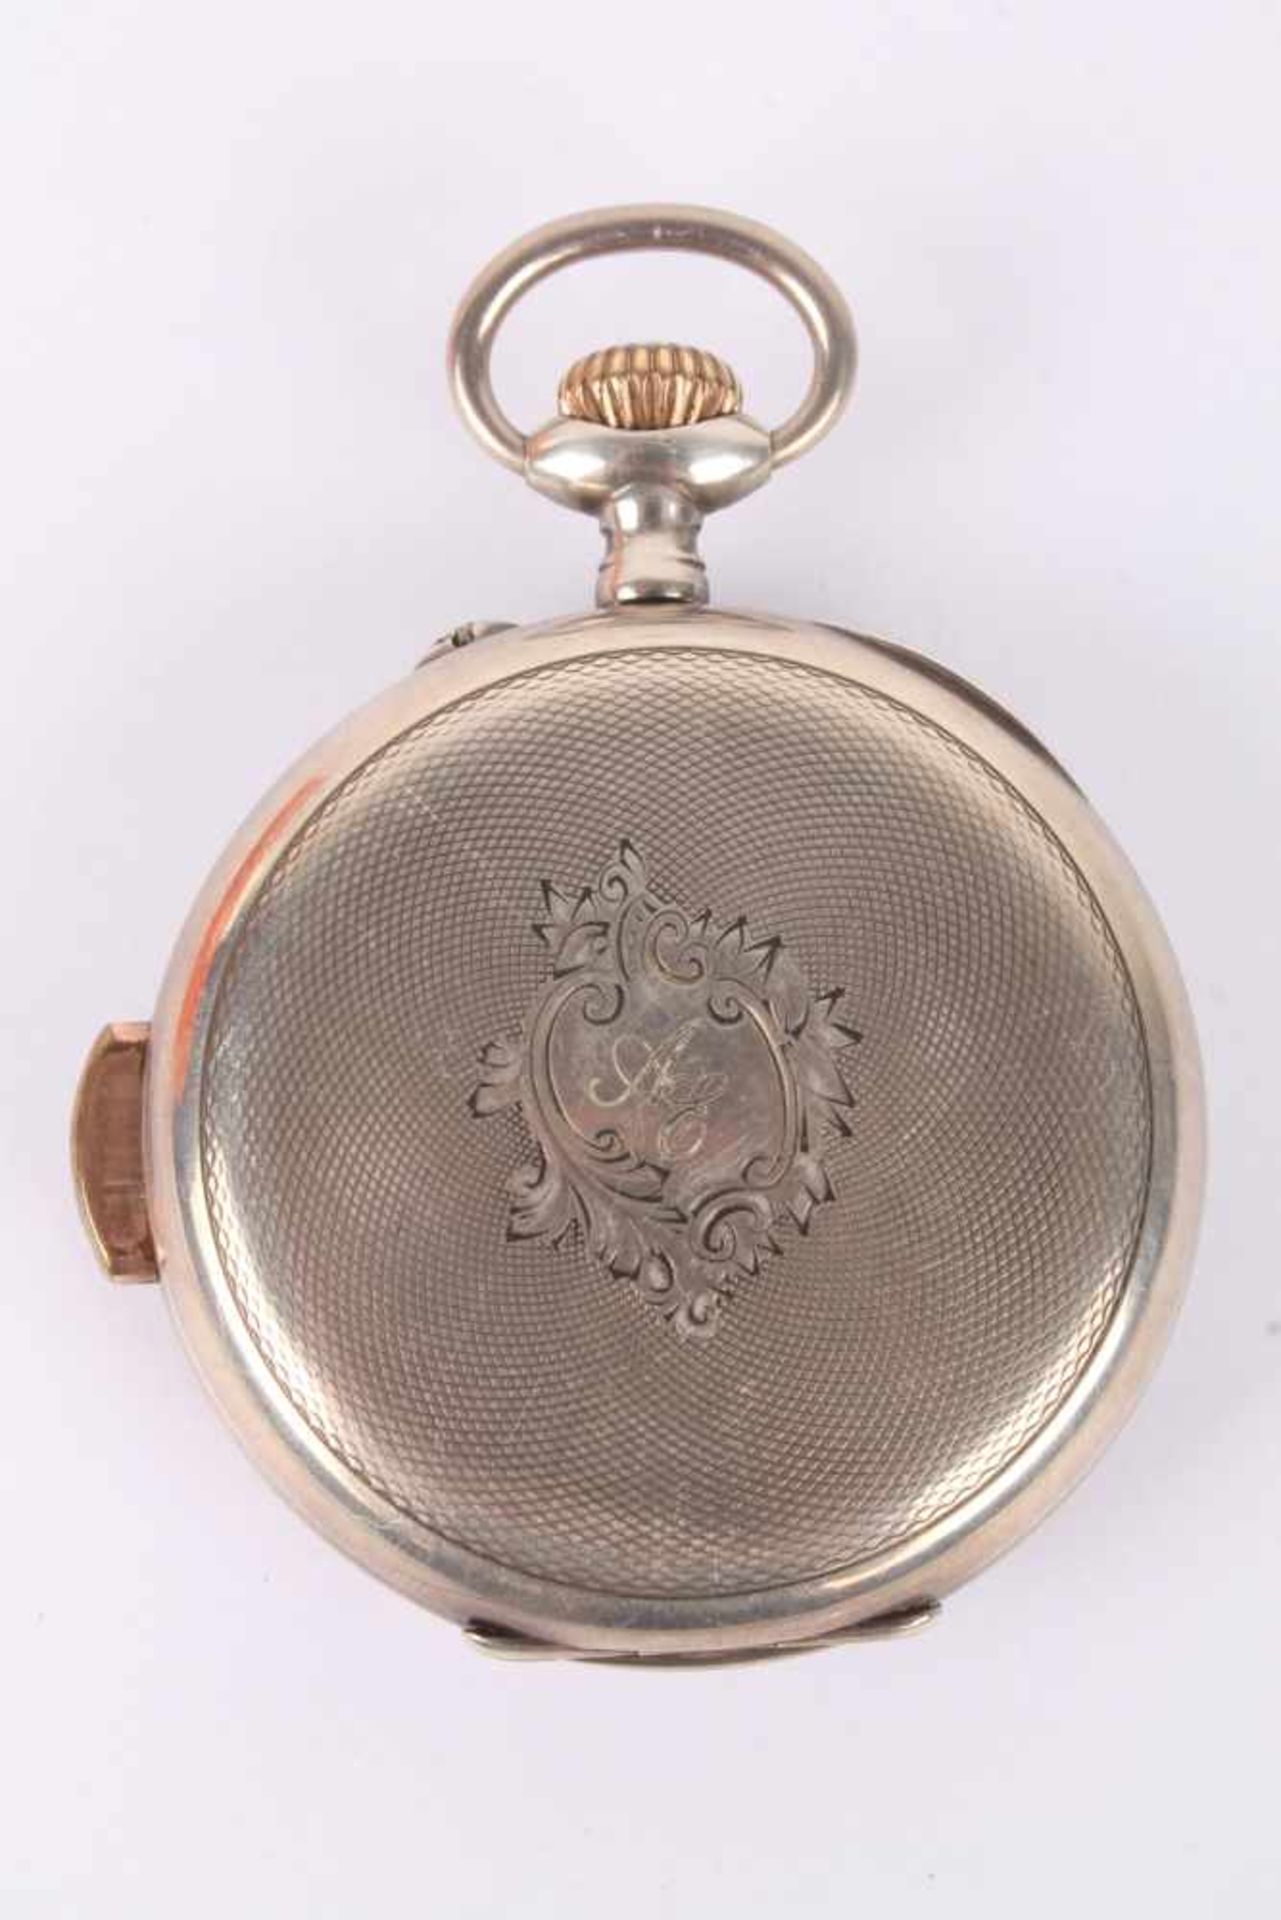 Repetier Taschenuhr um 1900, Silber, Chronophone,Repeater pocket watch 800 silver ca.. 1900, - Bild 3 aus 6